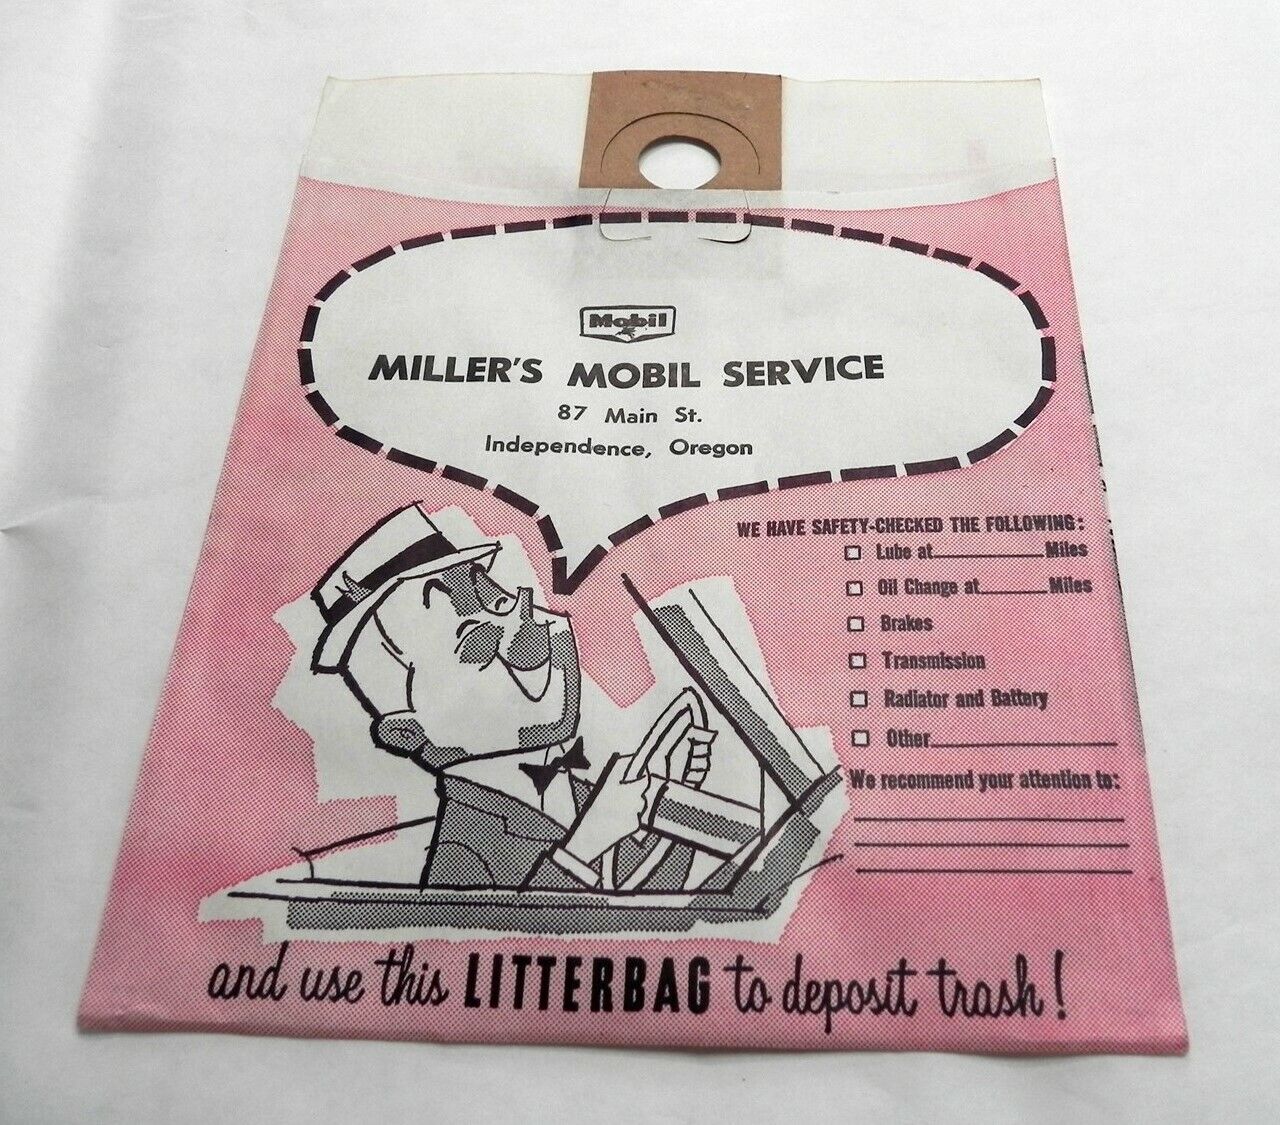 1950s VINTAGE MOBIL GAS SERVICE STATION TRASH LITTER BAG INDEPENDENCE OREGON